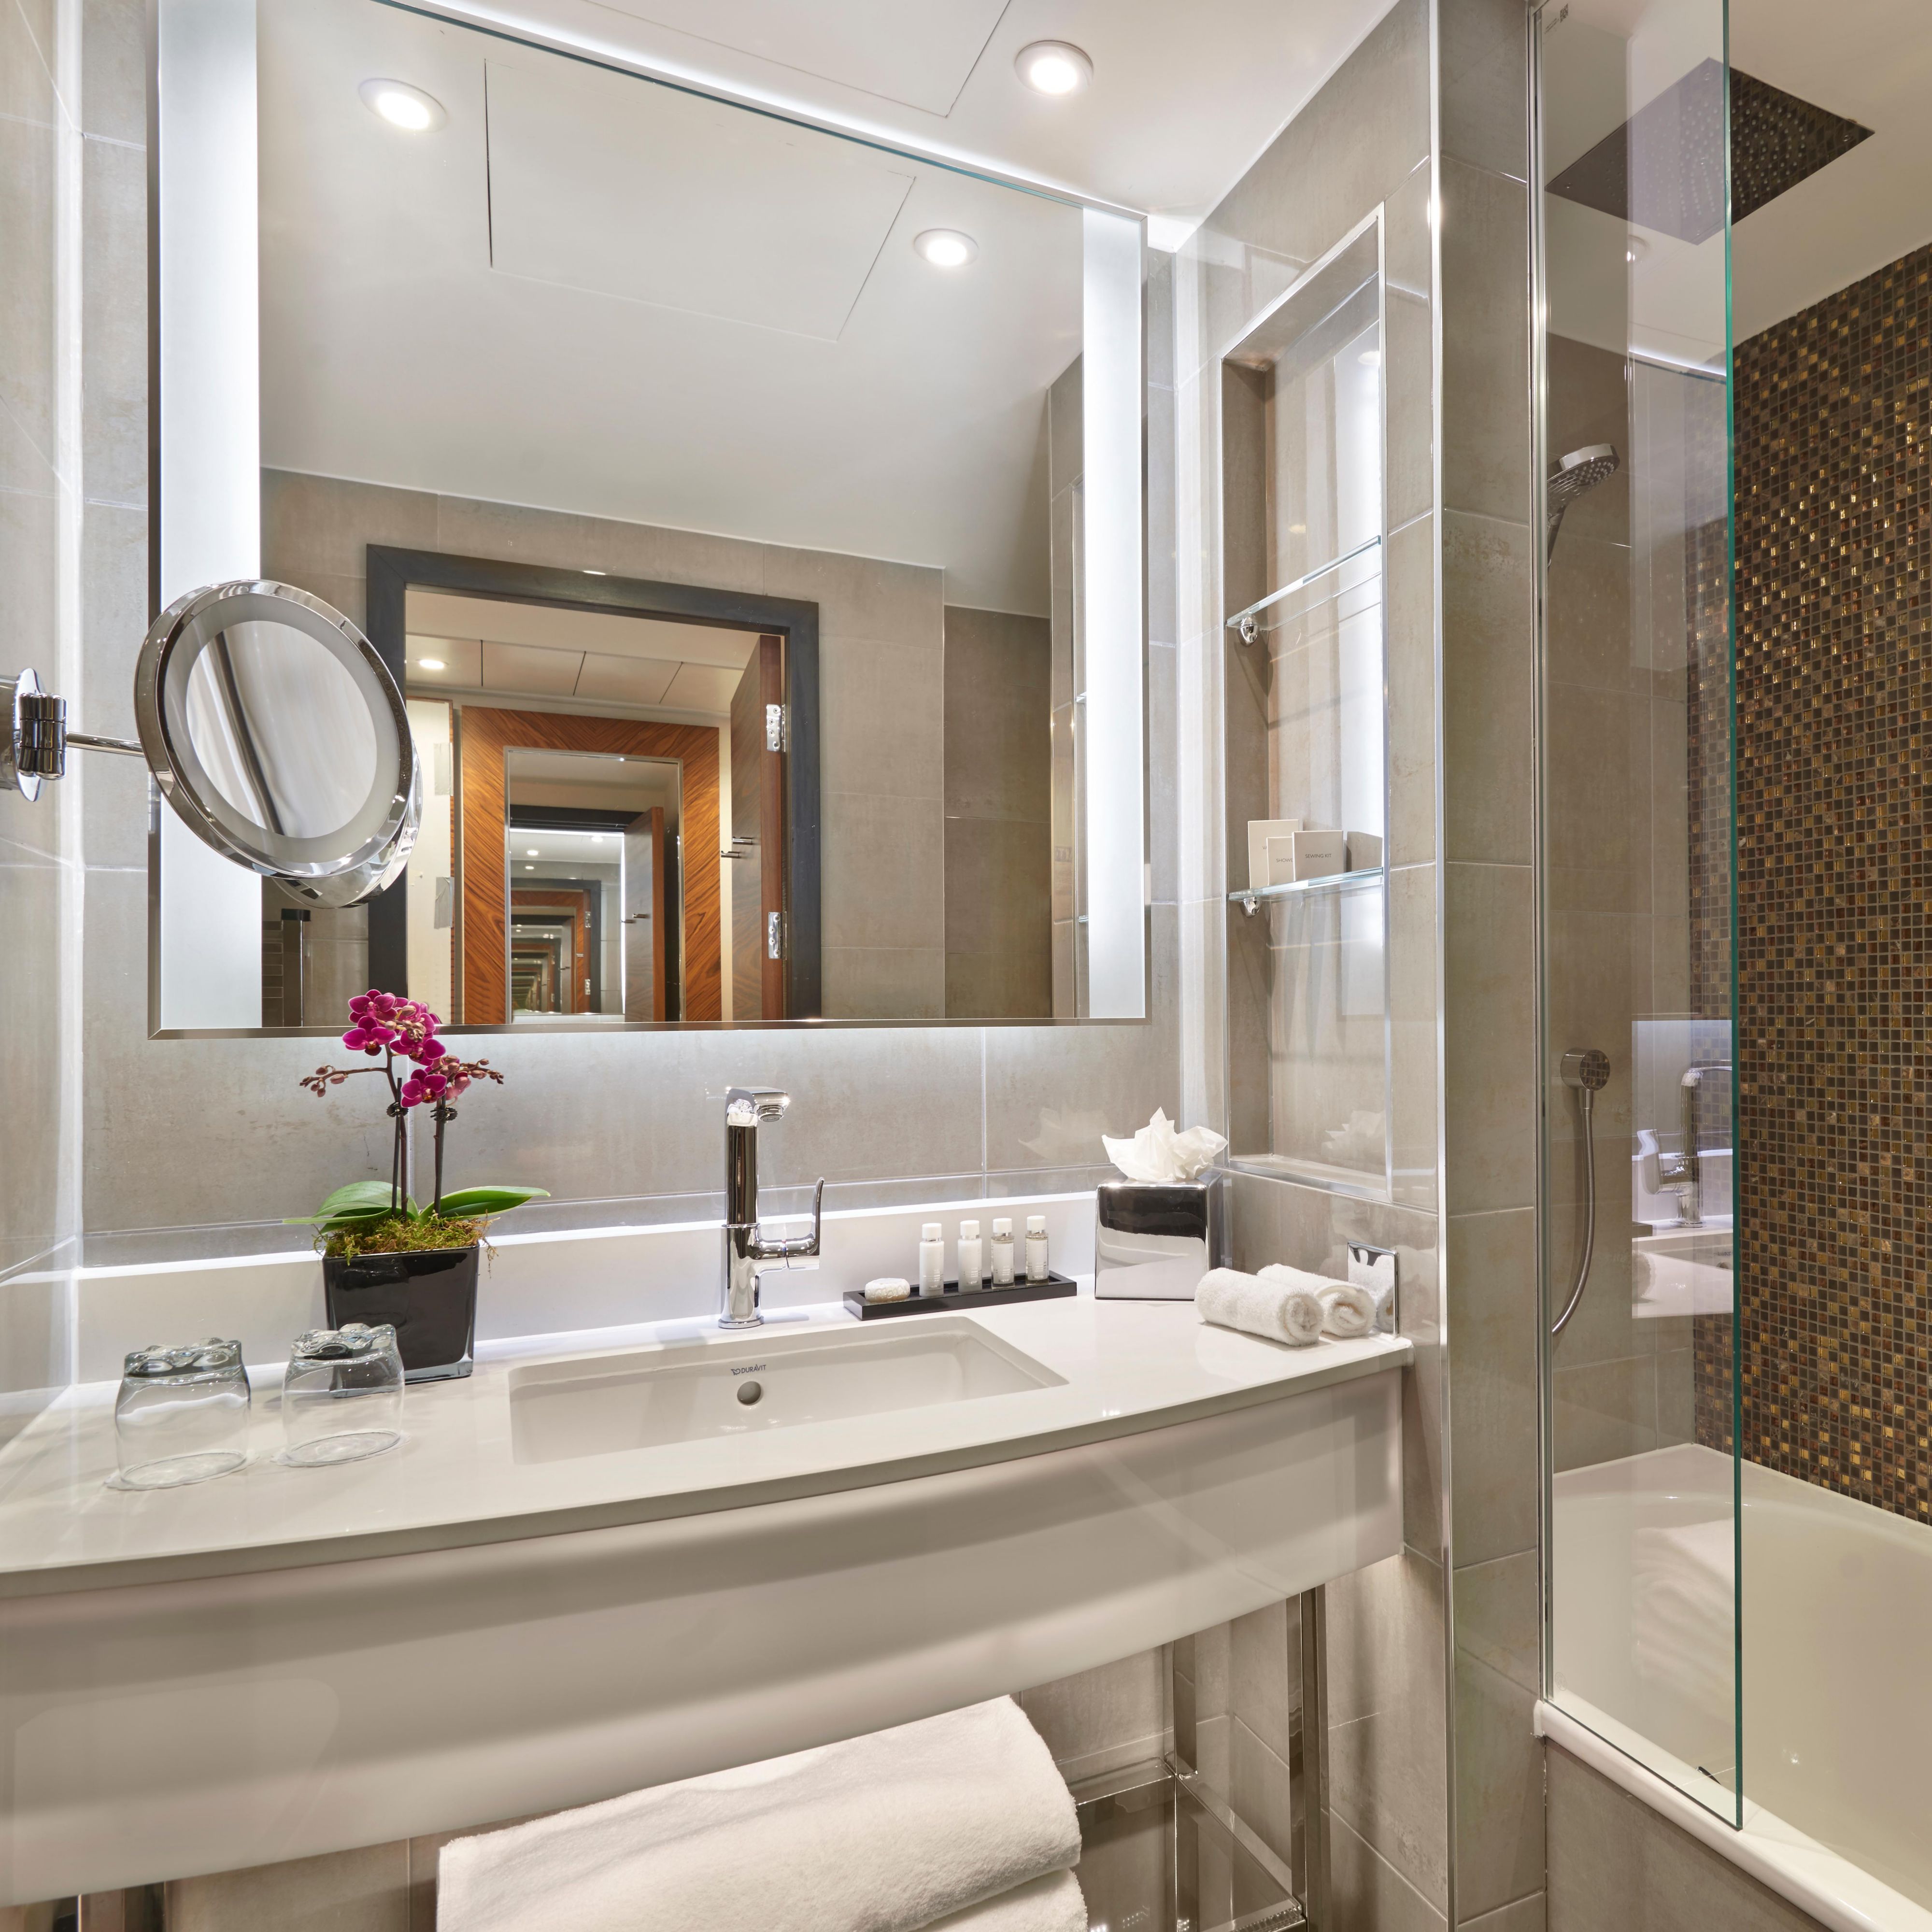 En-suite guest bathroom with mist free bathroom mirror